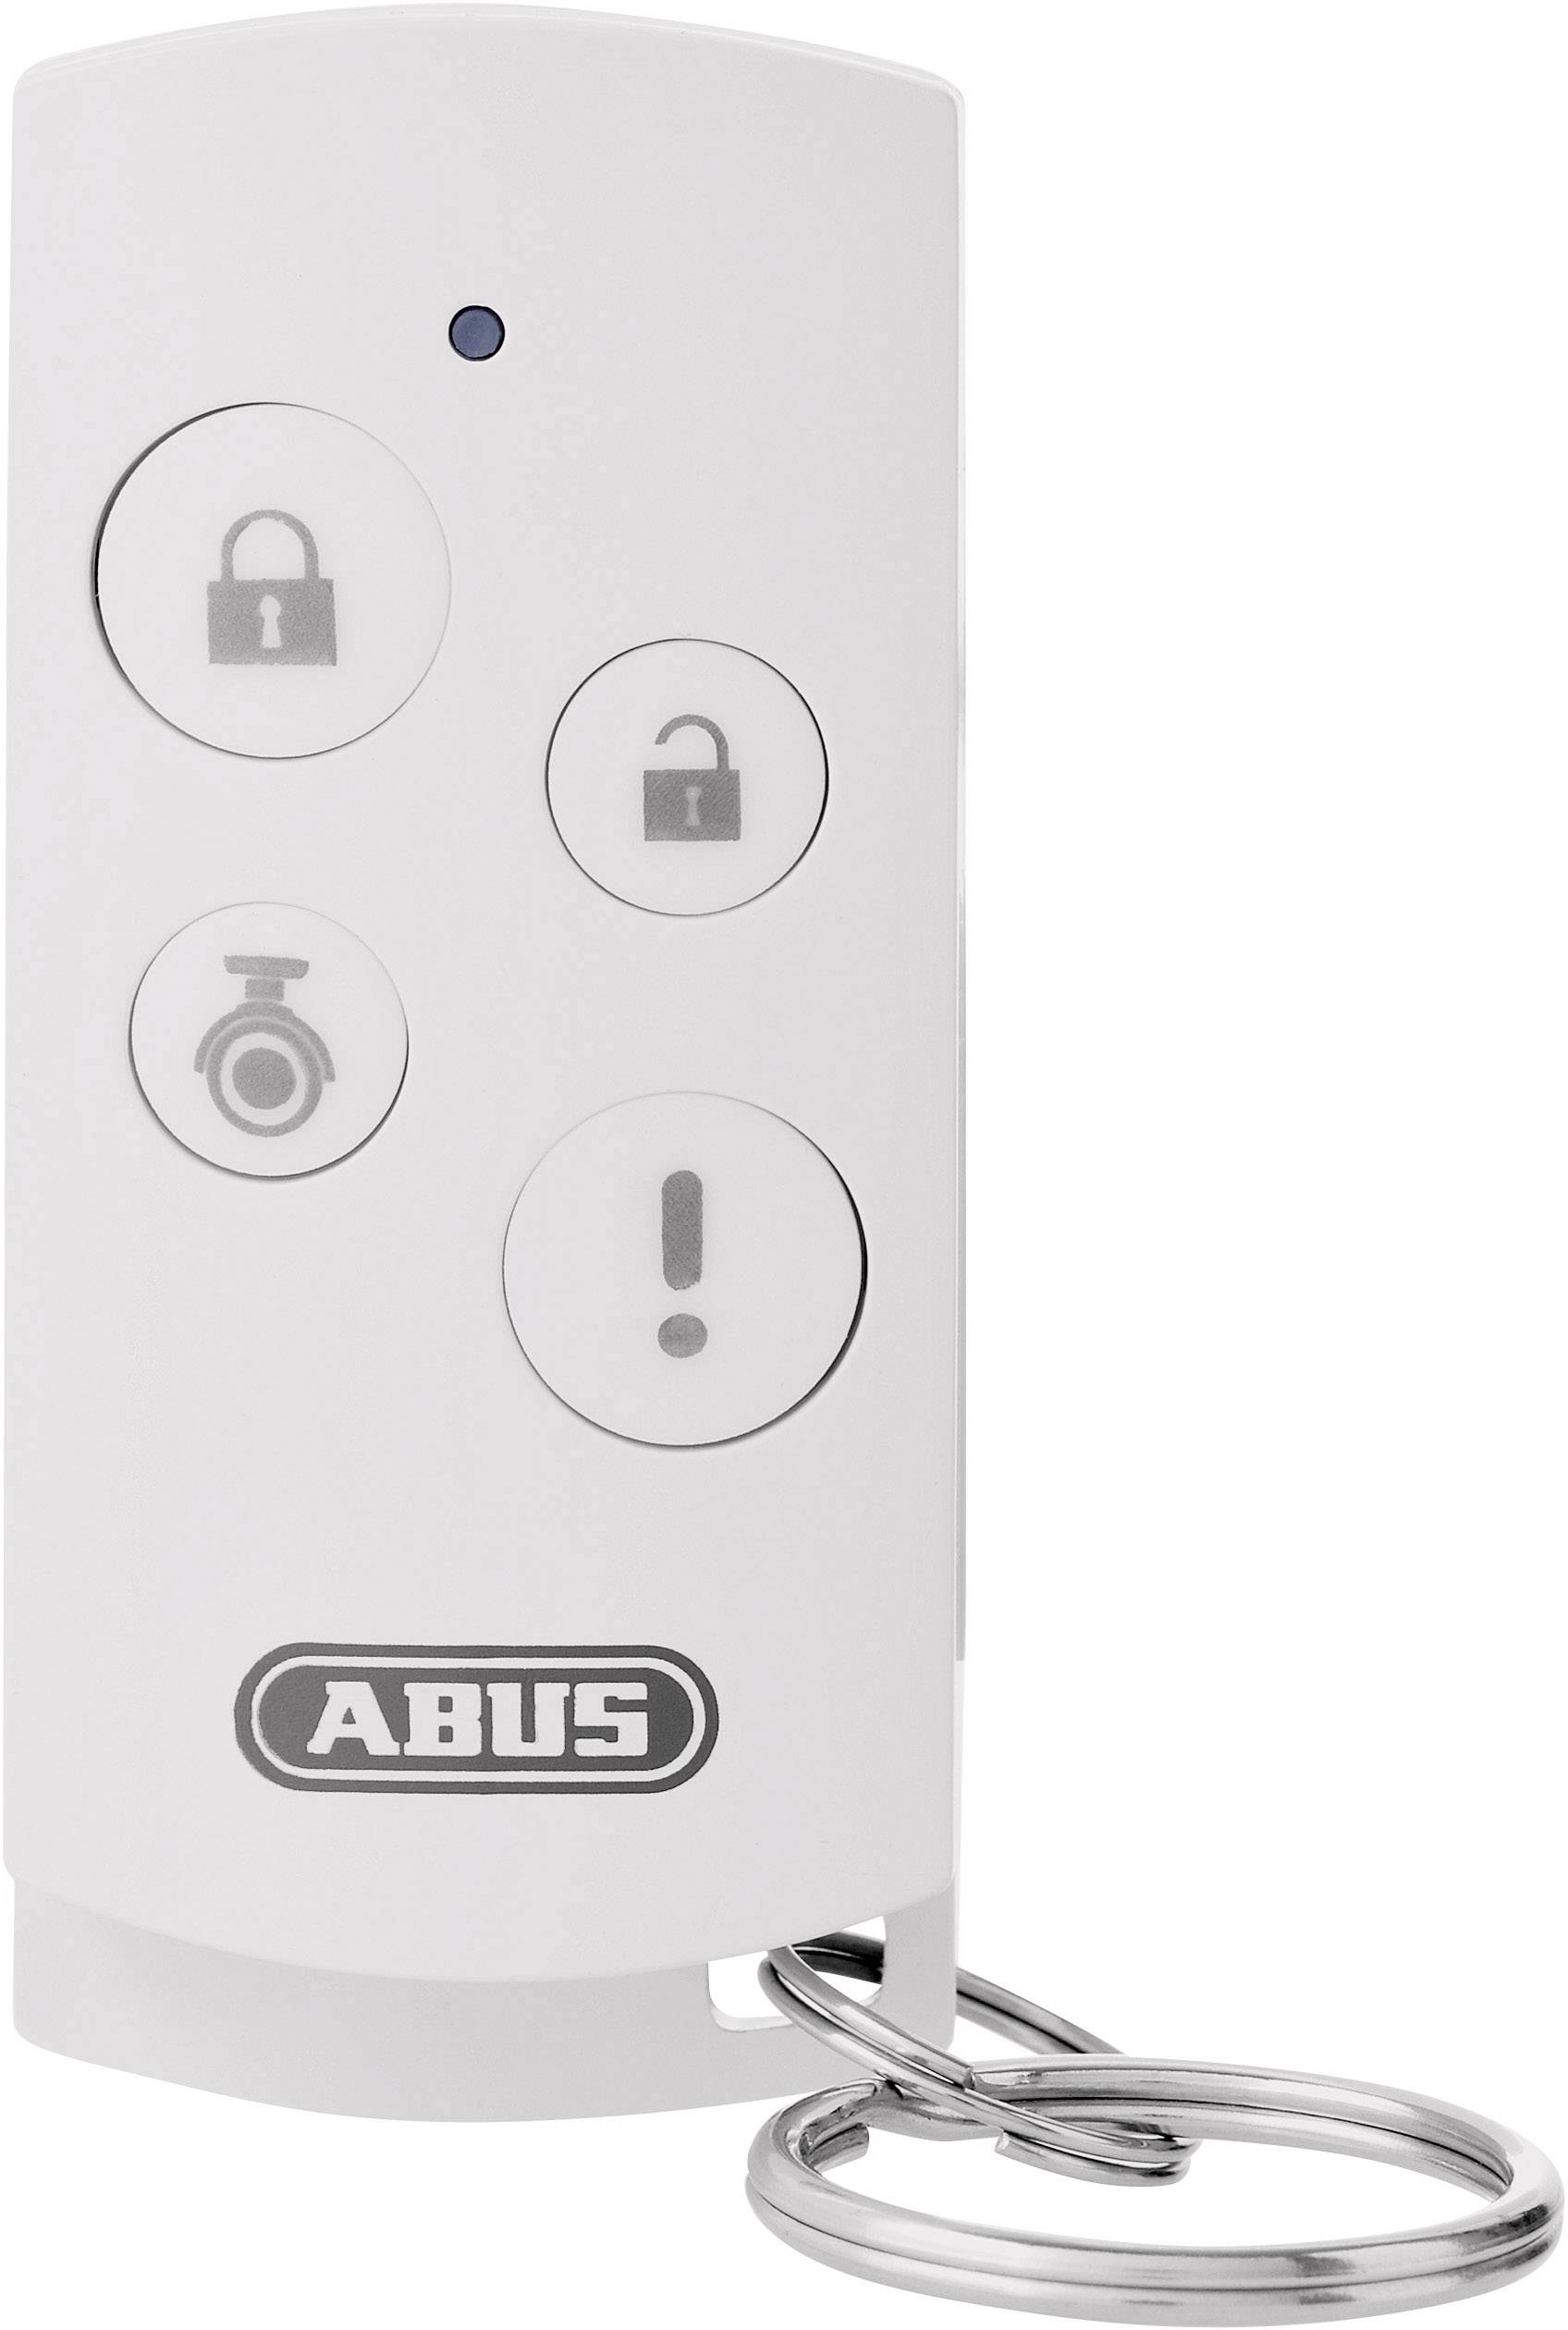 ABUS Smartvest Funk-Fernbedienung für Alarmanlage - Replay geschützt